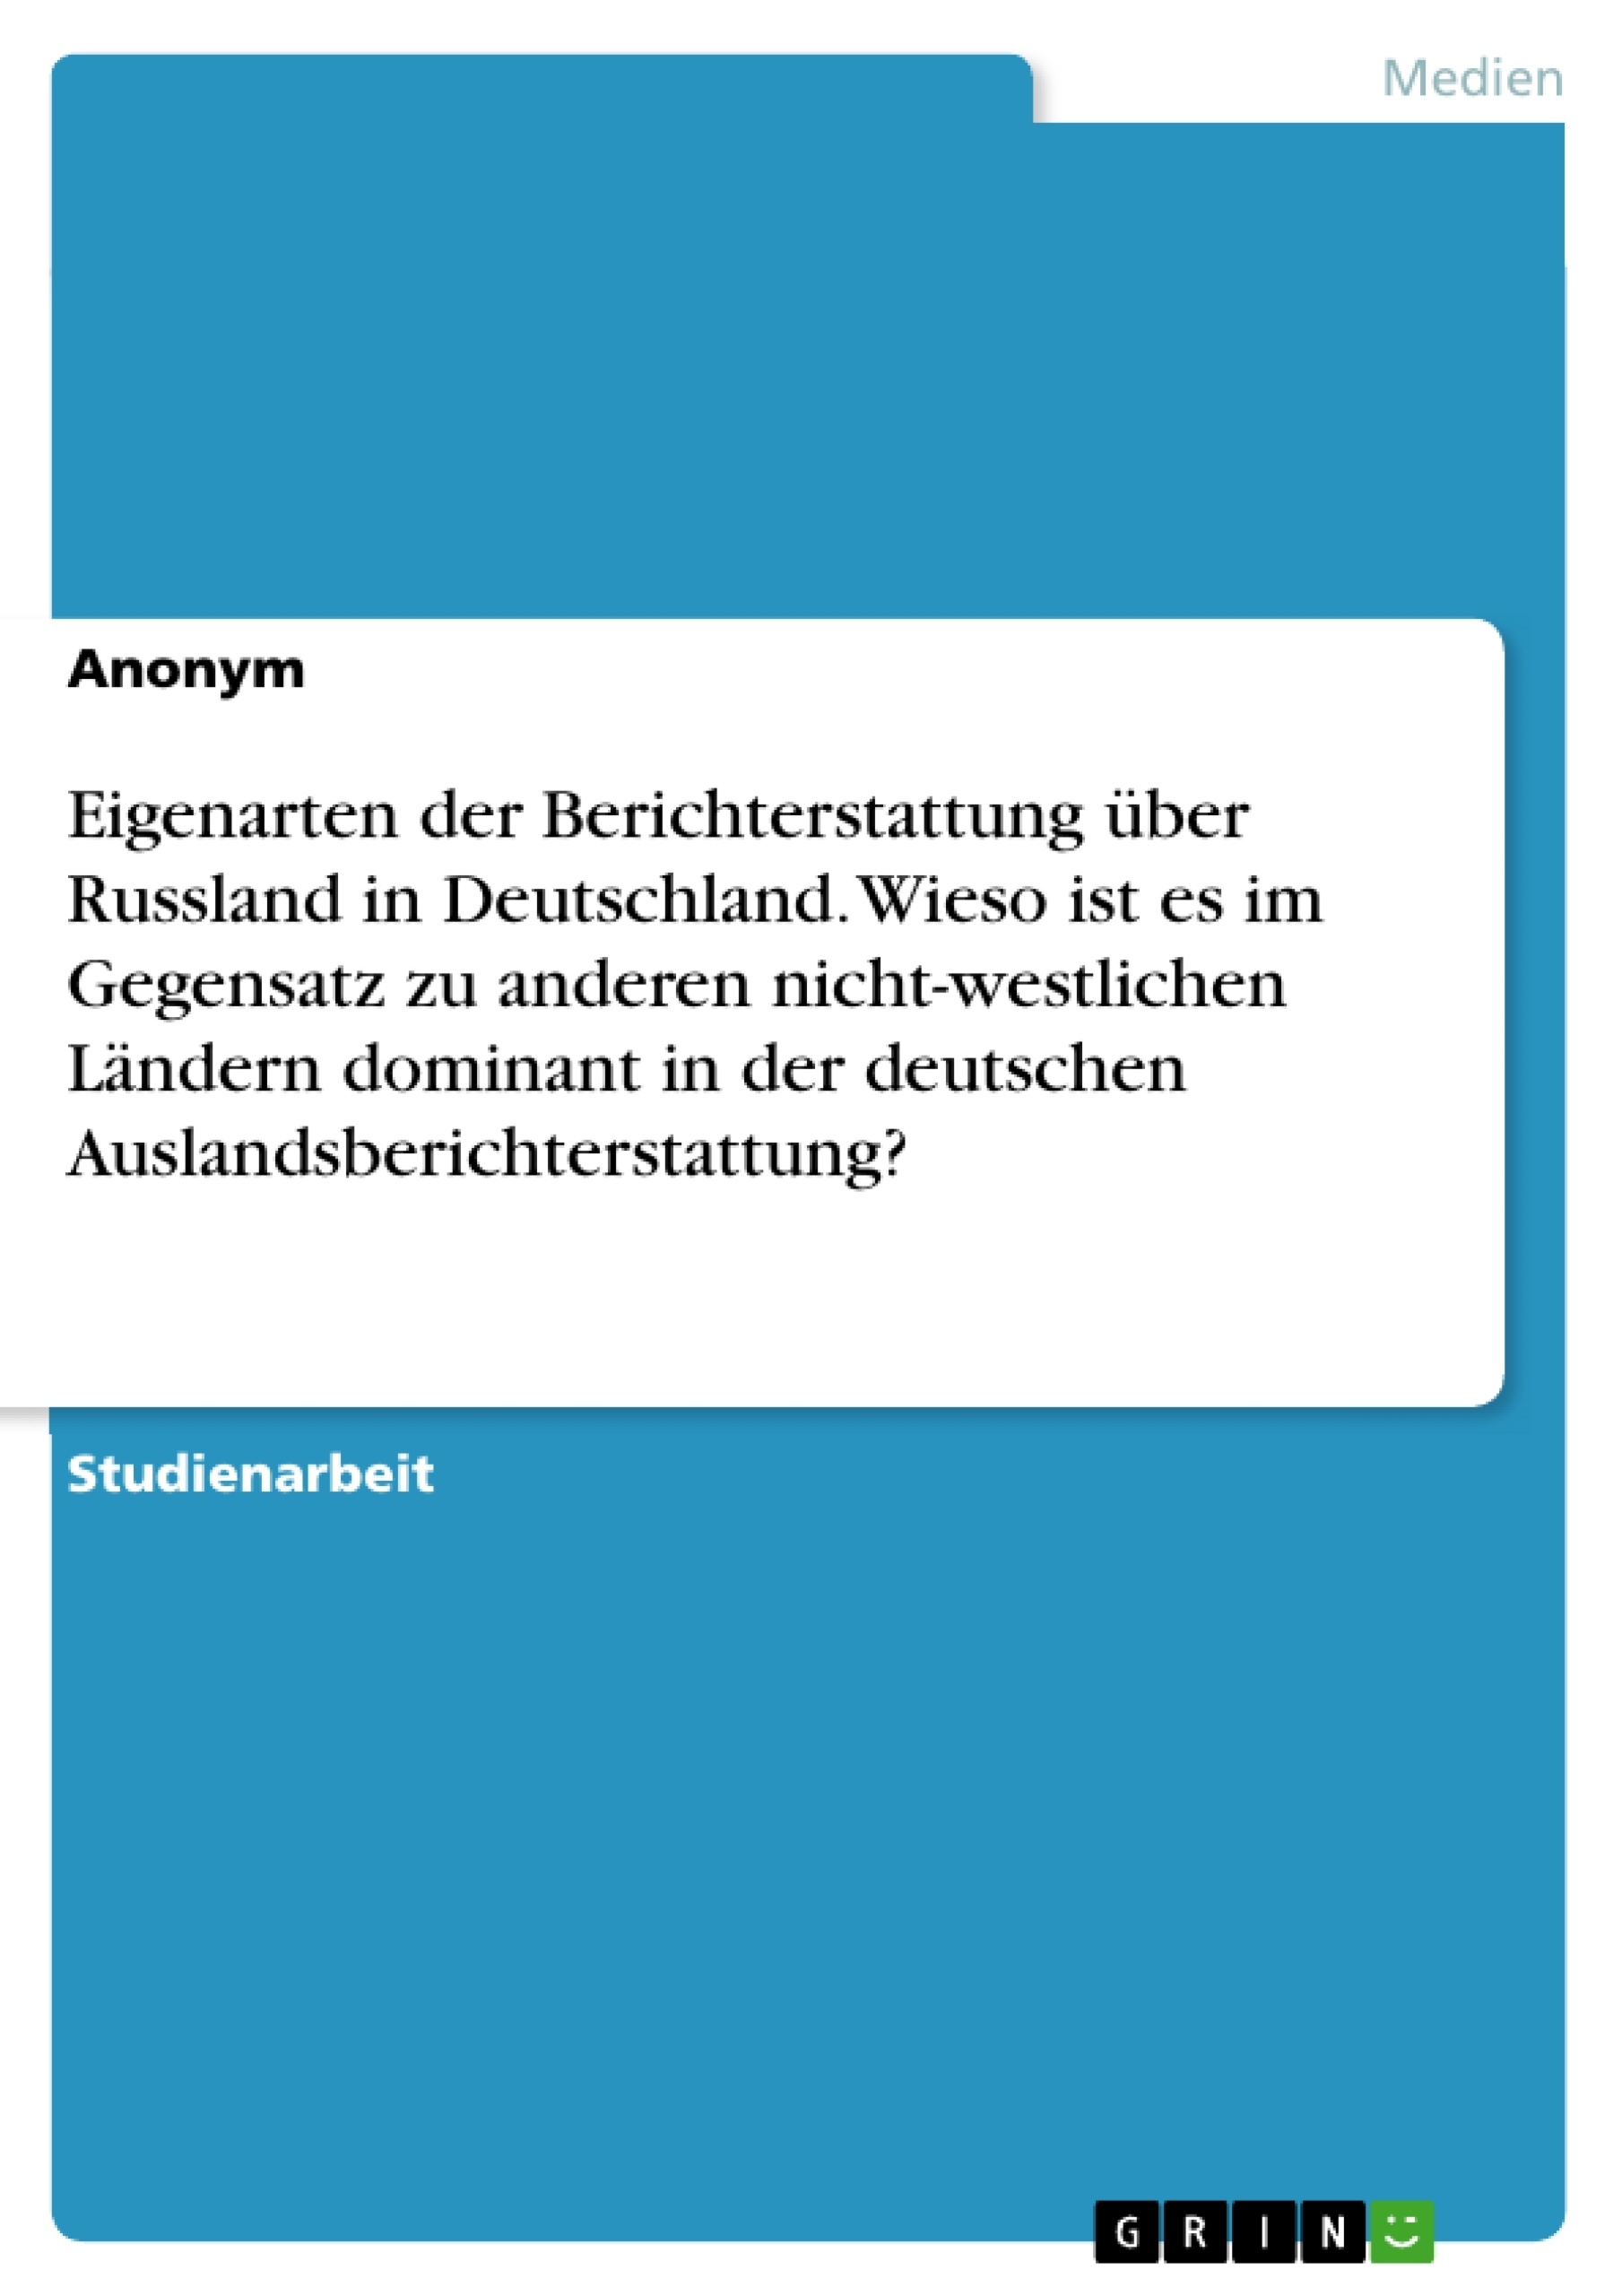 Title: Eigenarten der Berichterstattung über Russland in Deutschland. Wieso ist es im Gegensatz zu anderen nicht-westlichen Ländern dominant in der deutschen Auslandsberichterstattung?